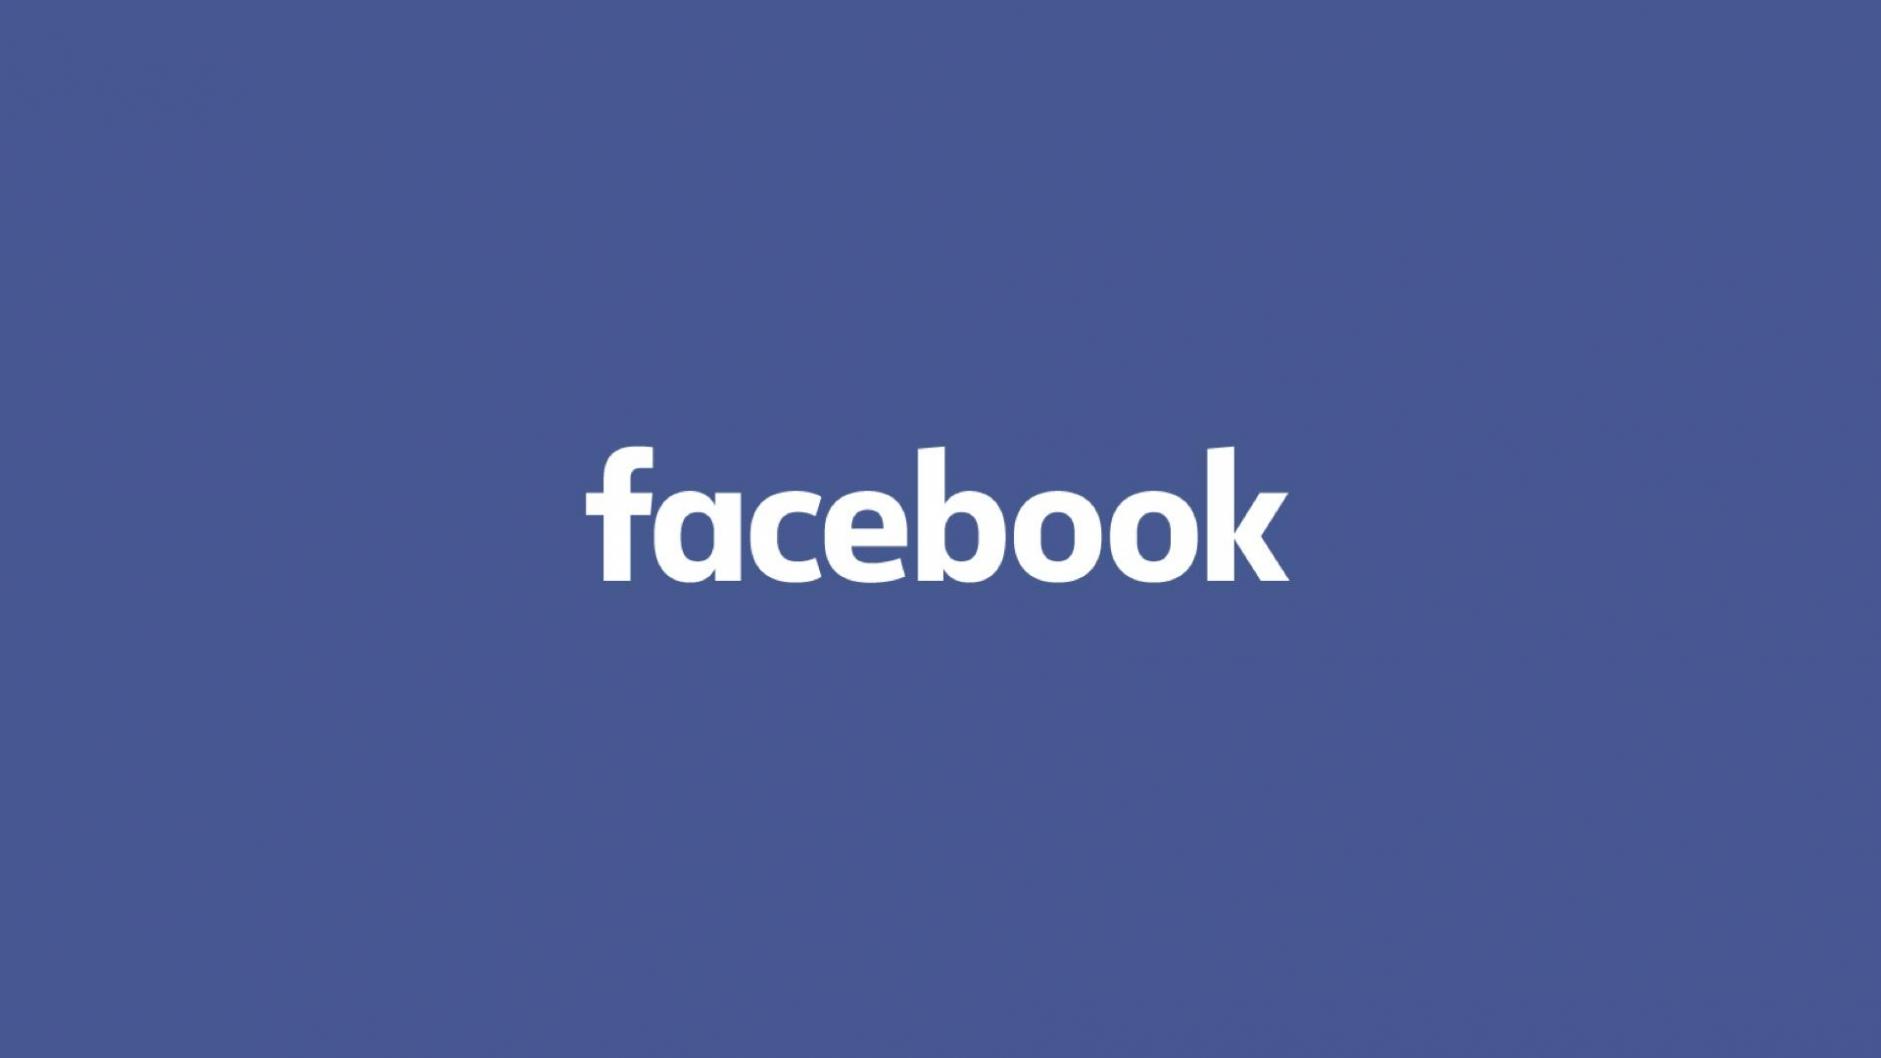 facebook怎么注册2021
2021facebook注册方法详解